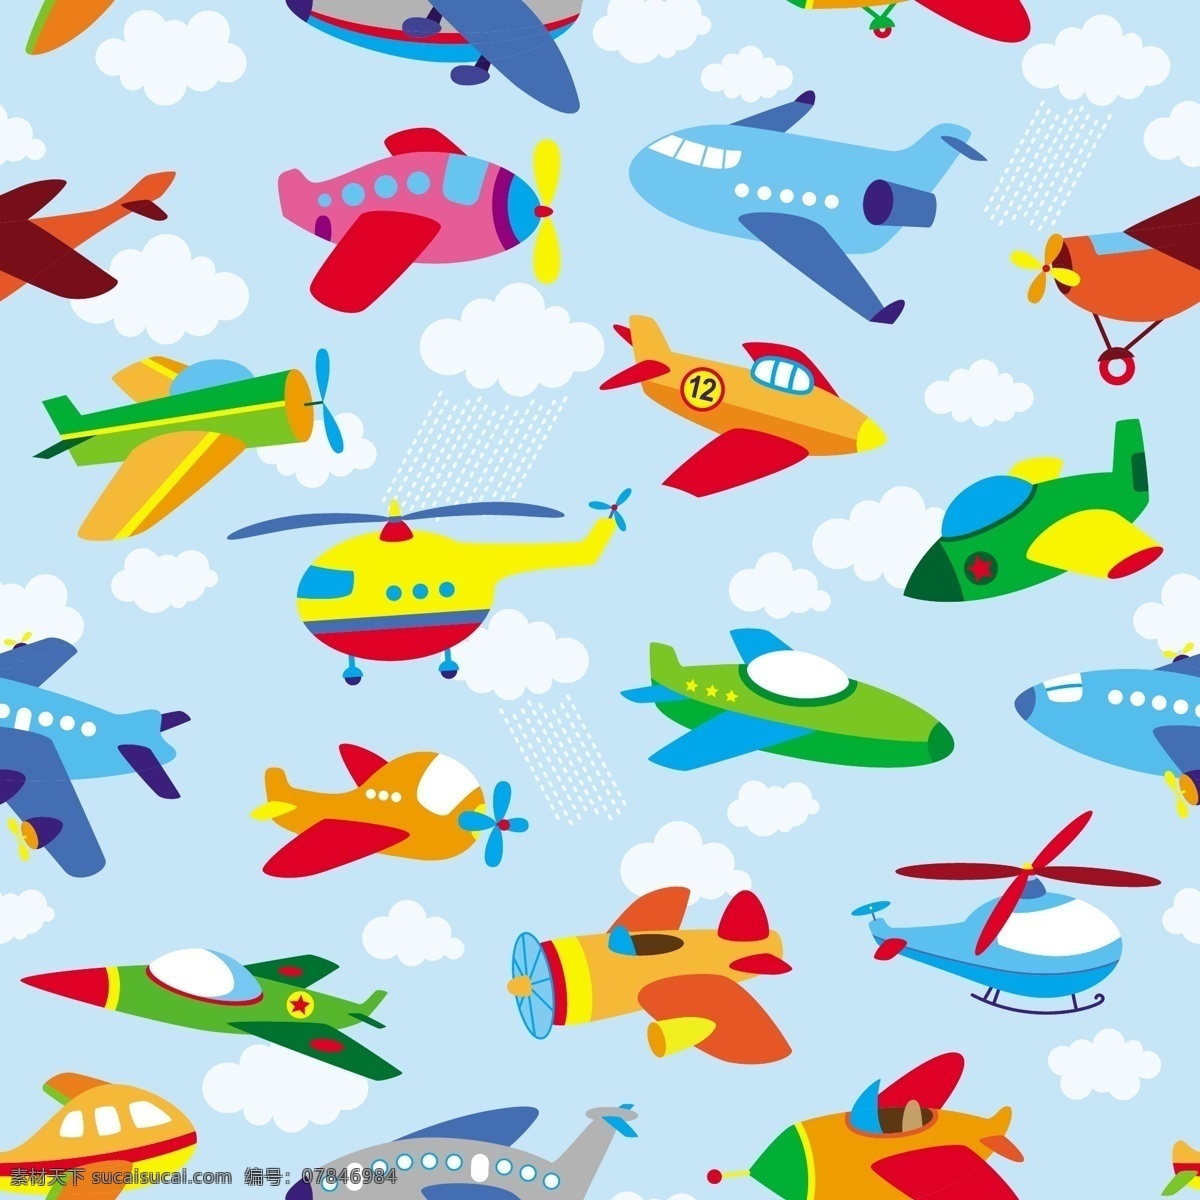 卡通 飛 機 矢量 圖 無縫 飛機 可愛 天空 飛行 運輸 玩具 旅遊 雲 交通 圖形元素 兒童 繪圖 航空 塗鴉 插畫 直升機 翼 圖片 藝術 度假 白色